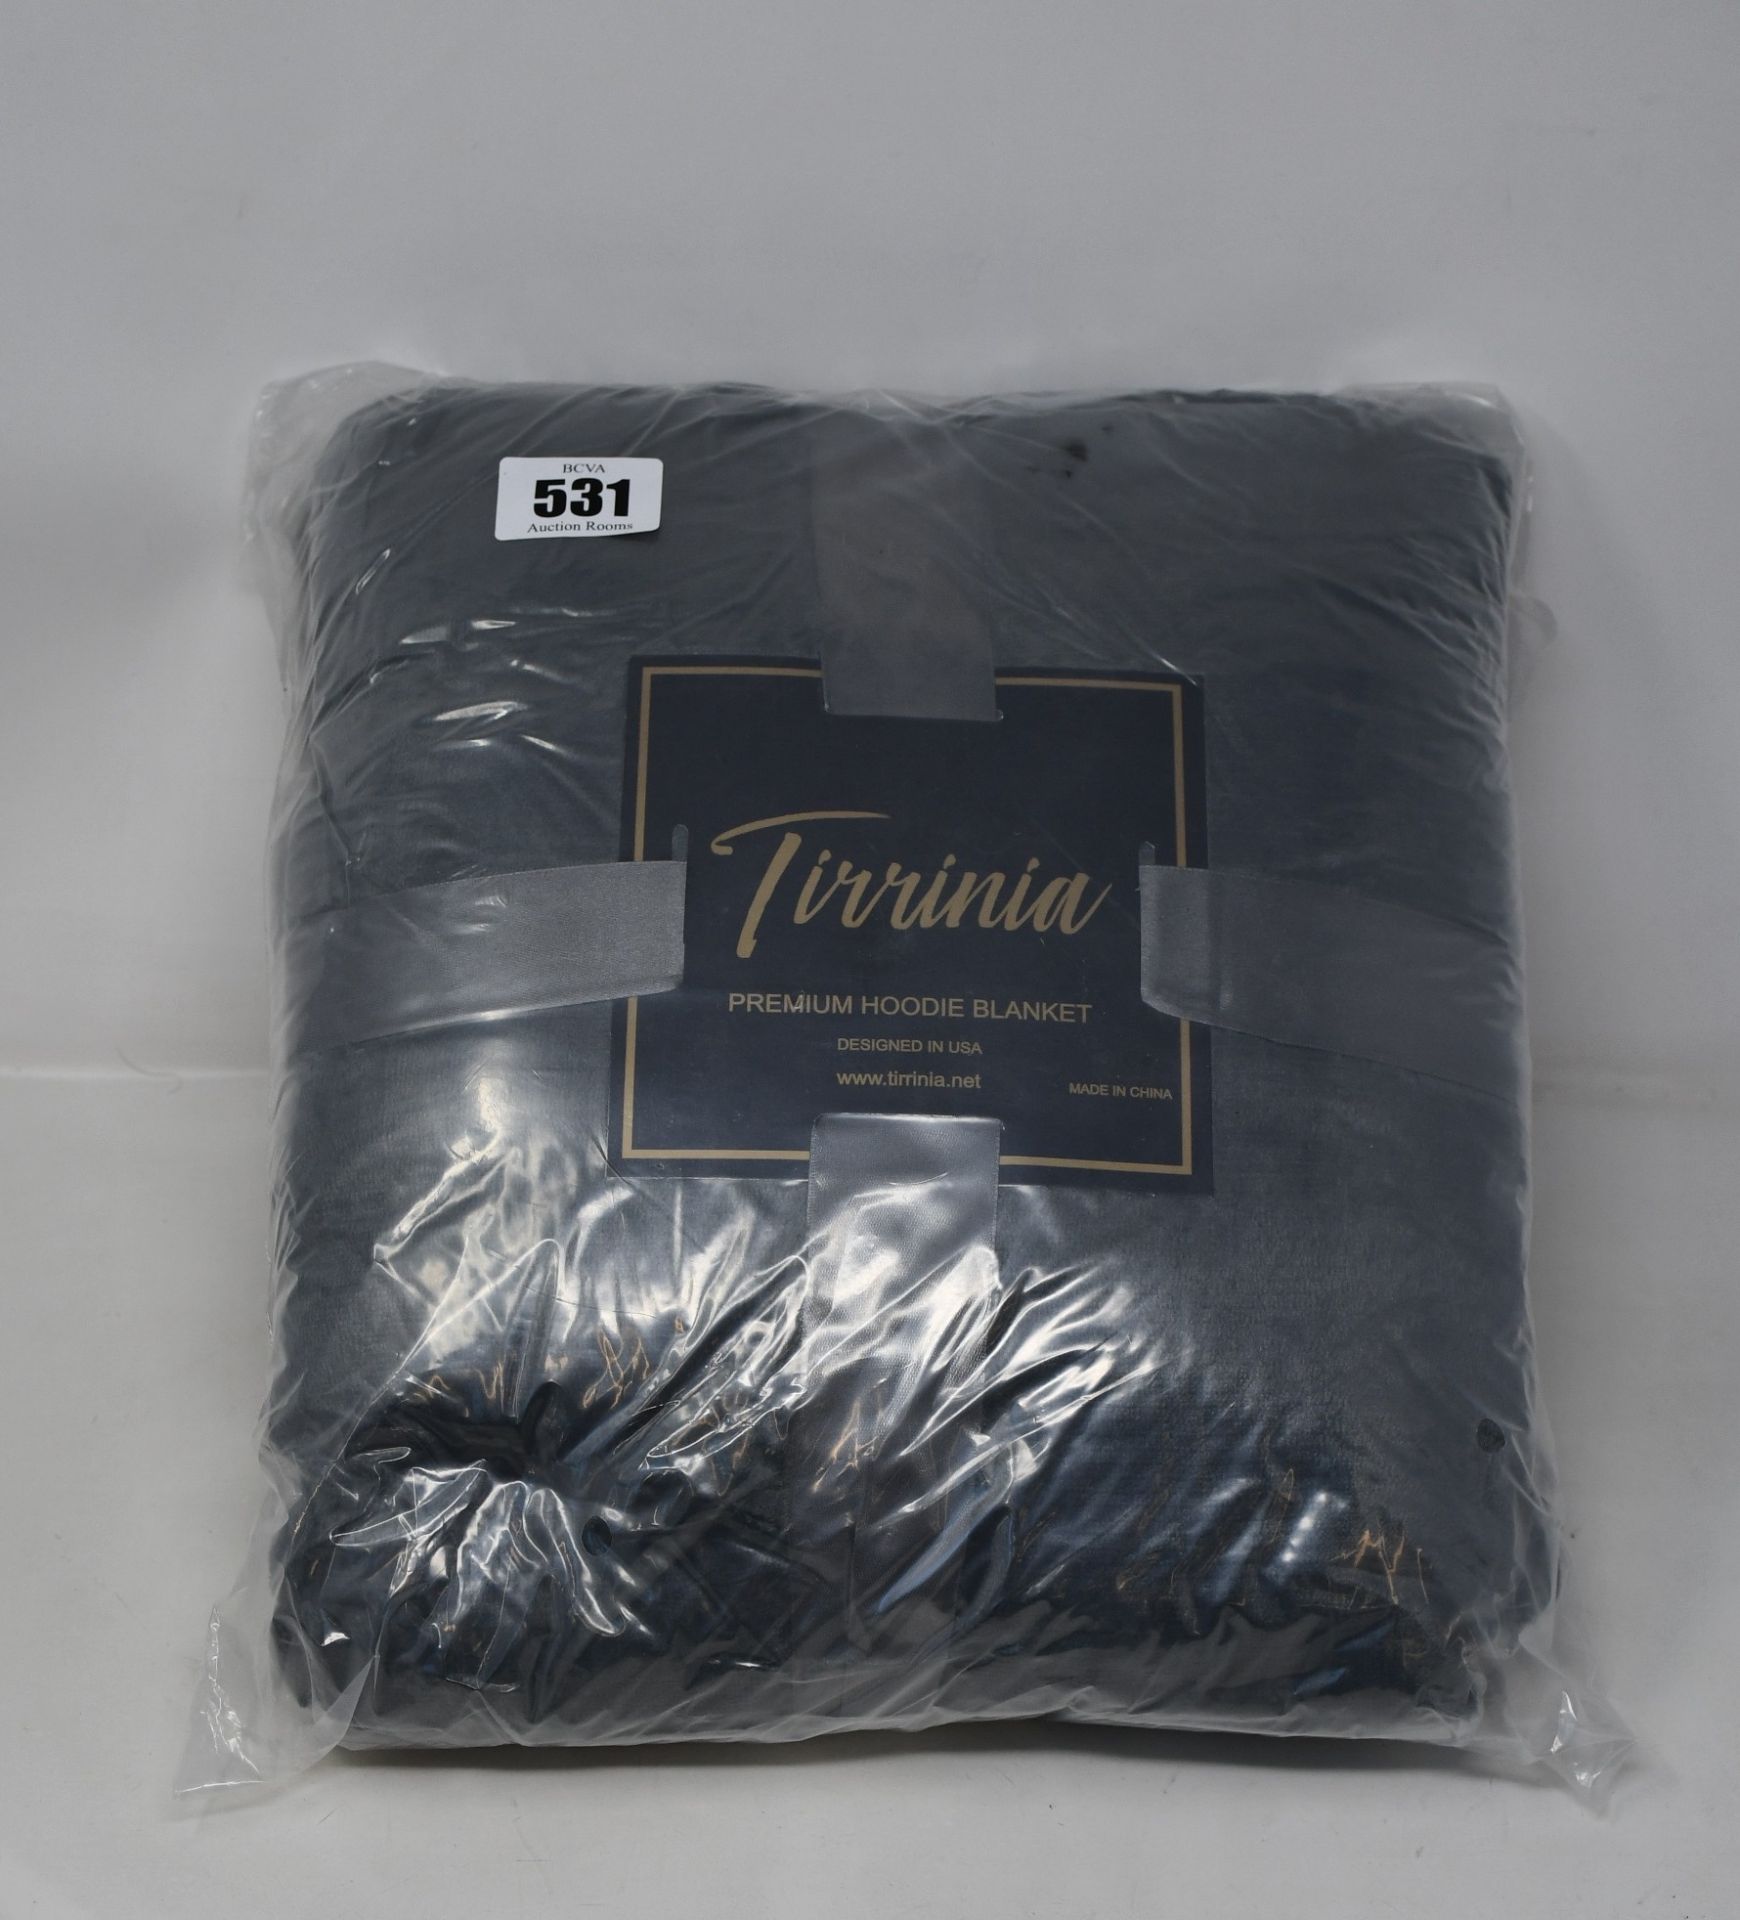 Three Tirrinia Premium Hoodie Blankets in grey.